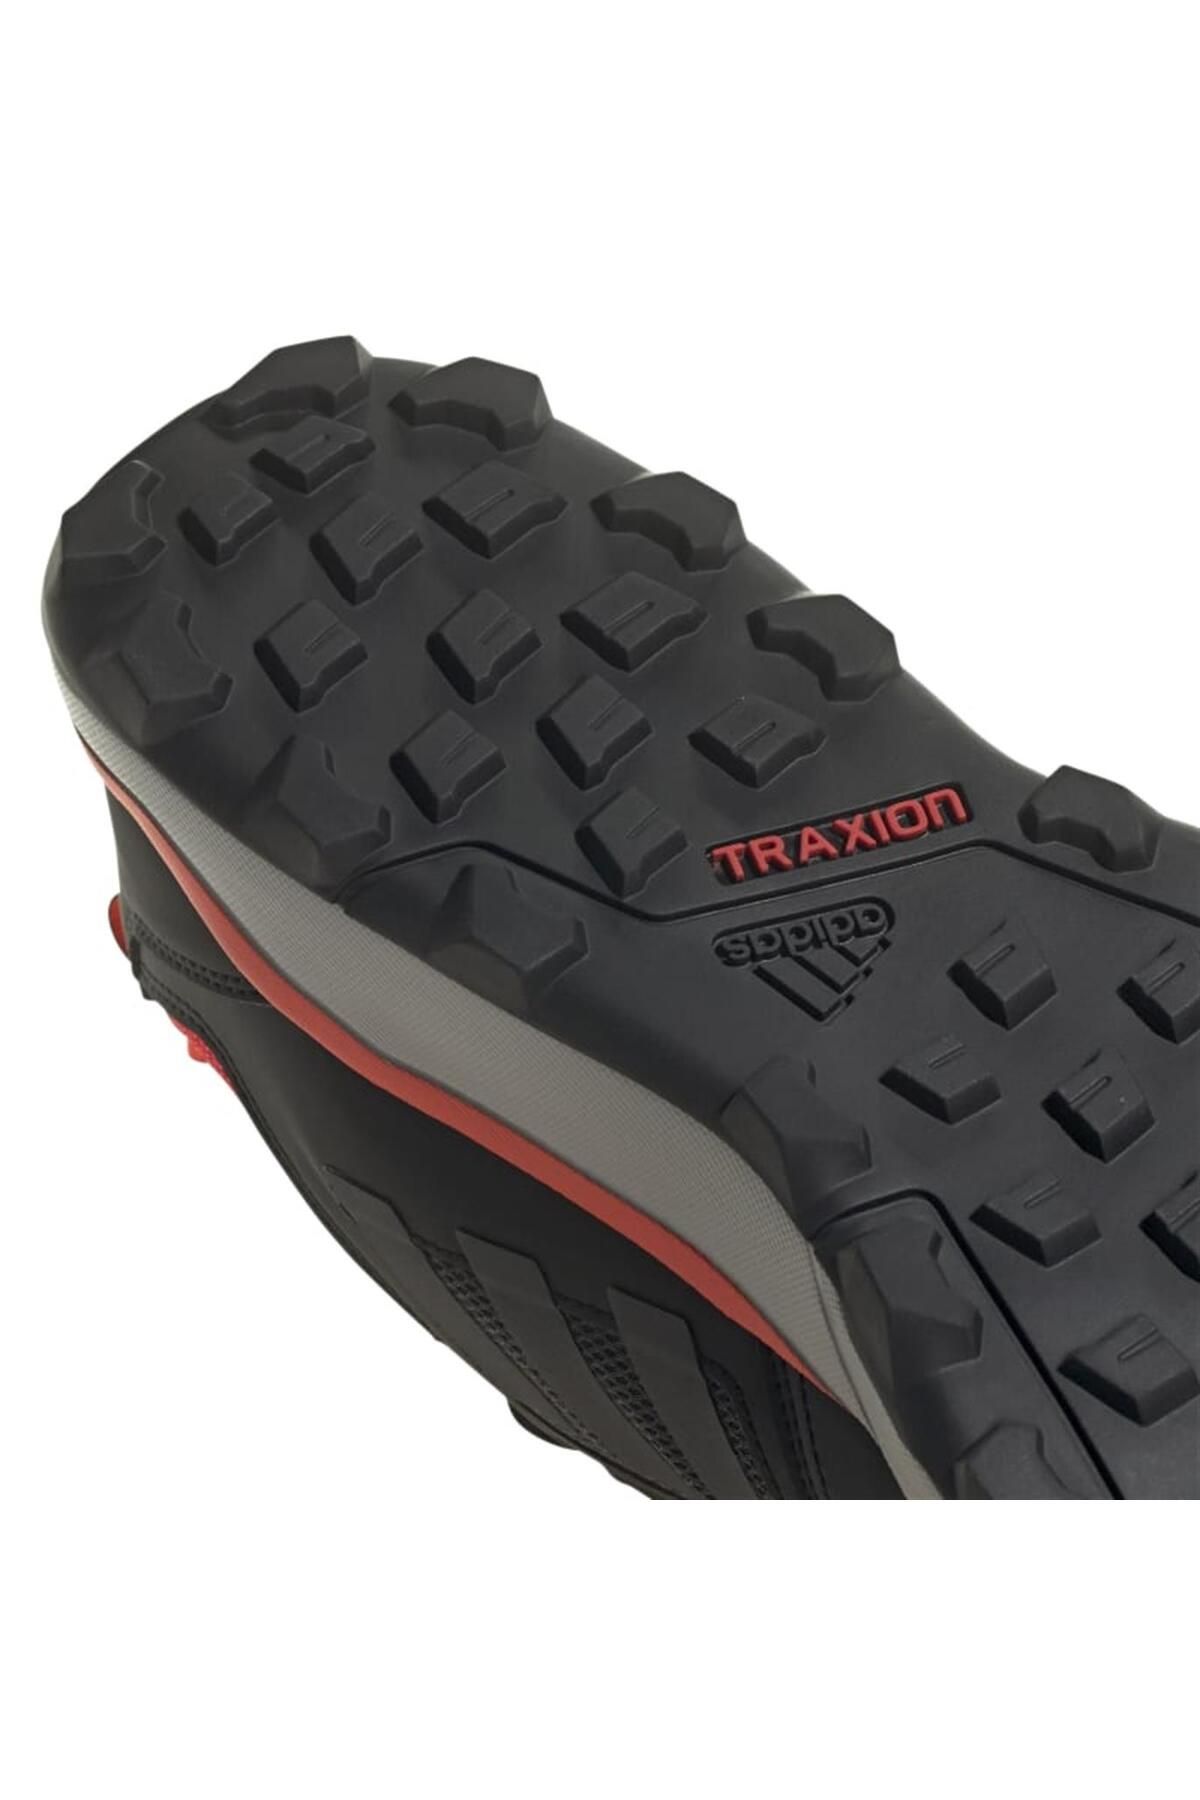 کفش کتانی فضای باز مدل TERREX TRACEROCKER مردانه آدیداس Adidas